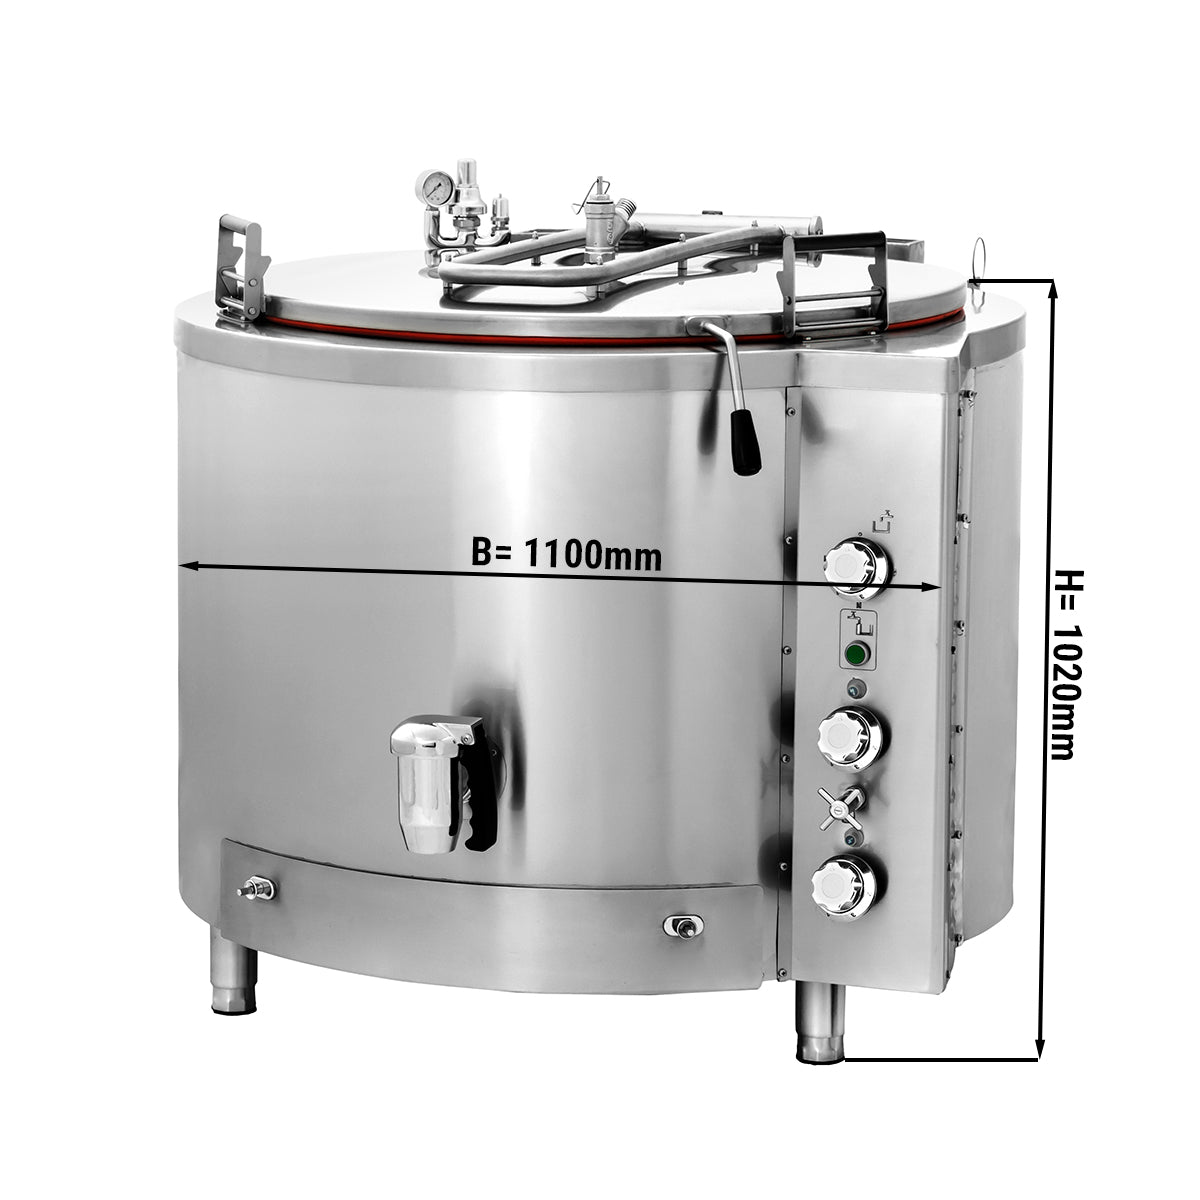 Gas kogekar - 400 liter - Indirekte opvarmning